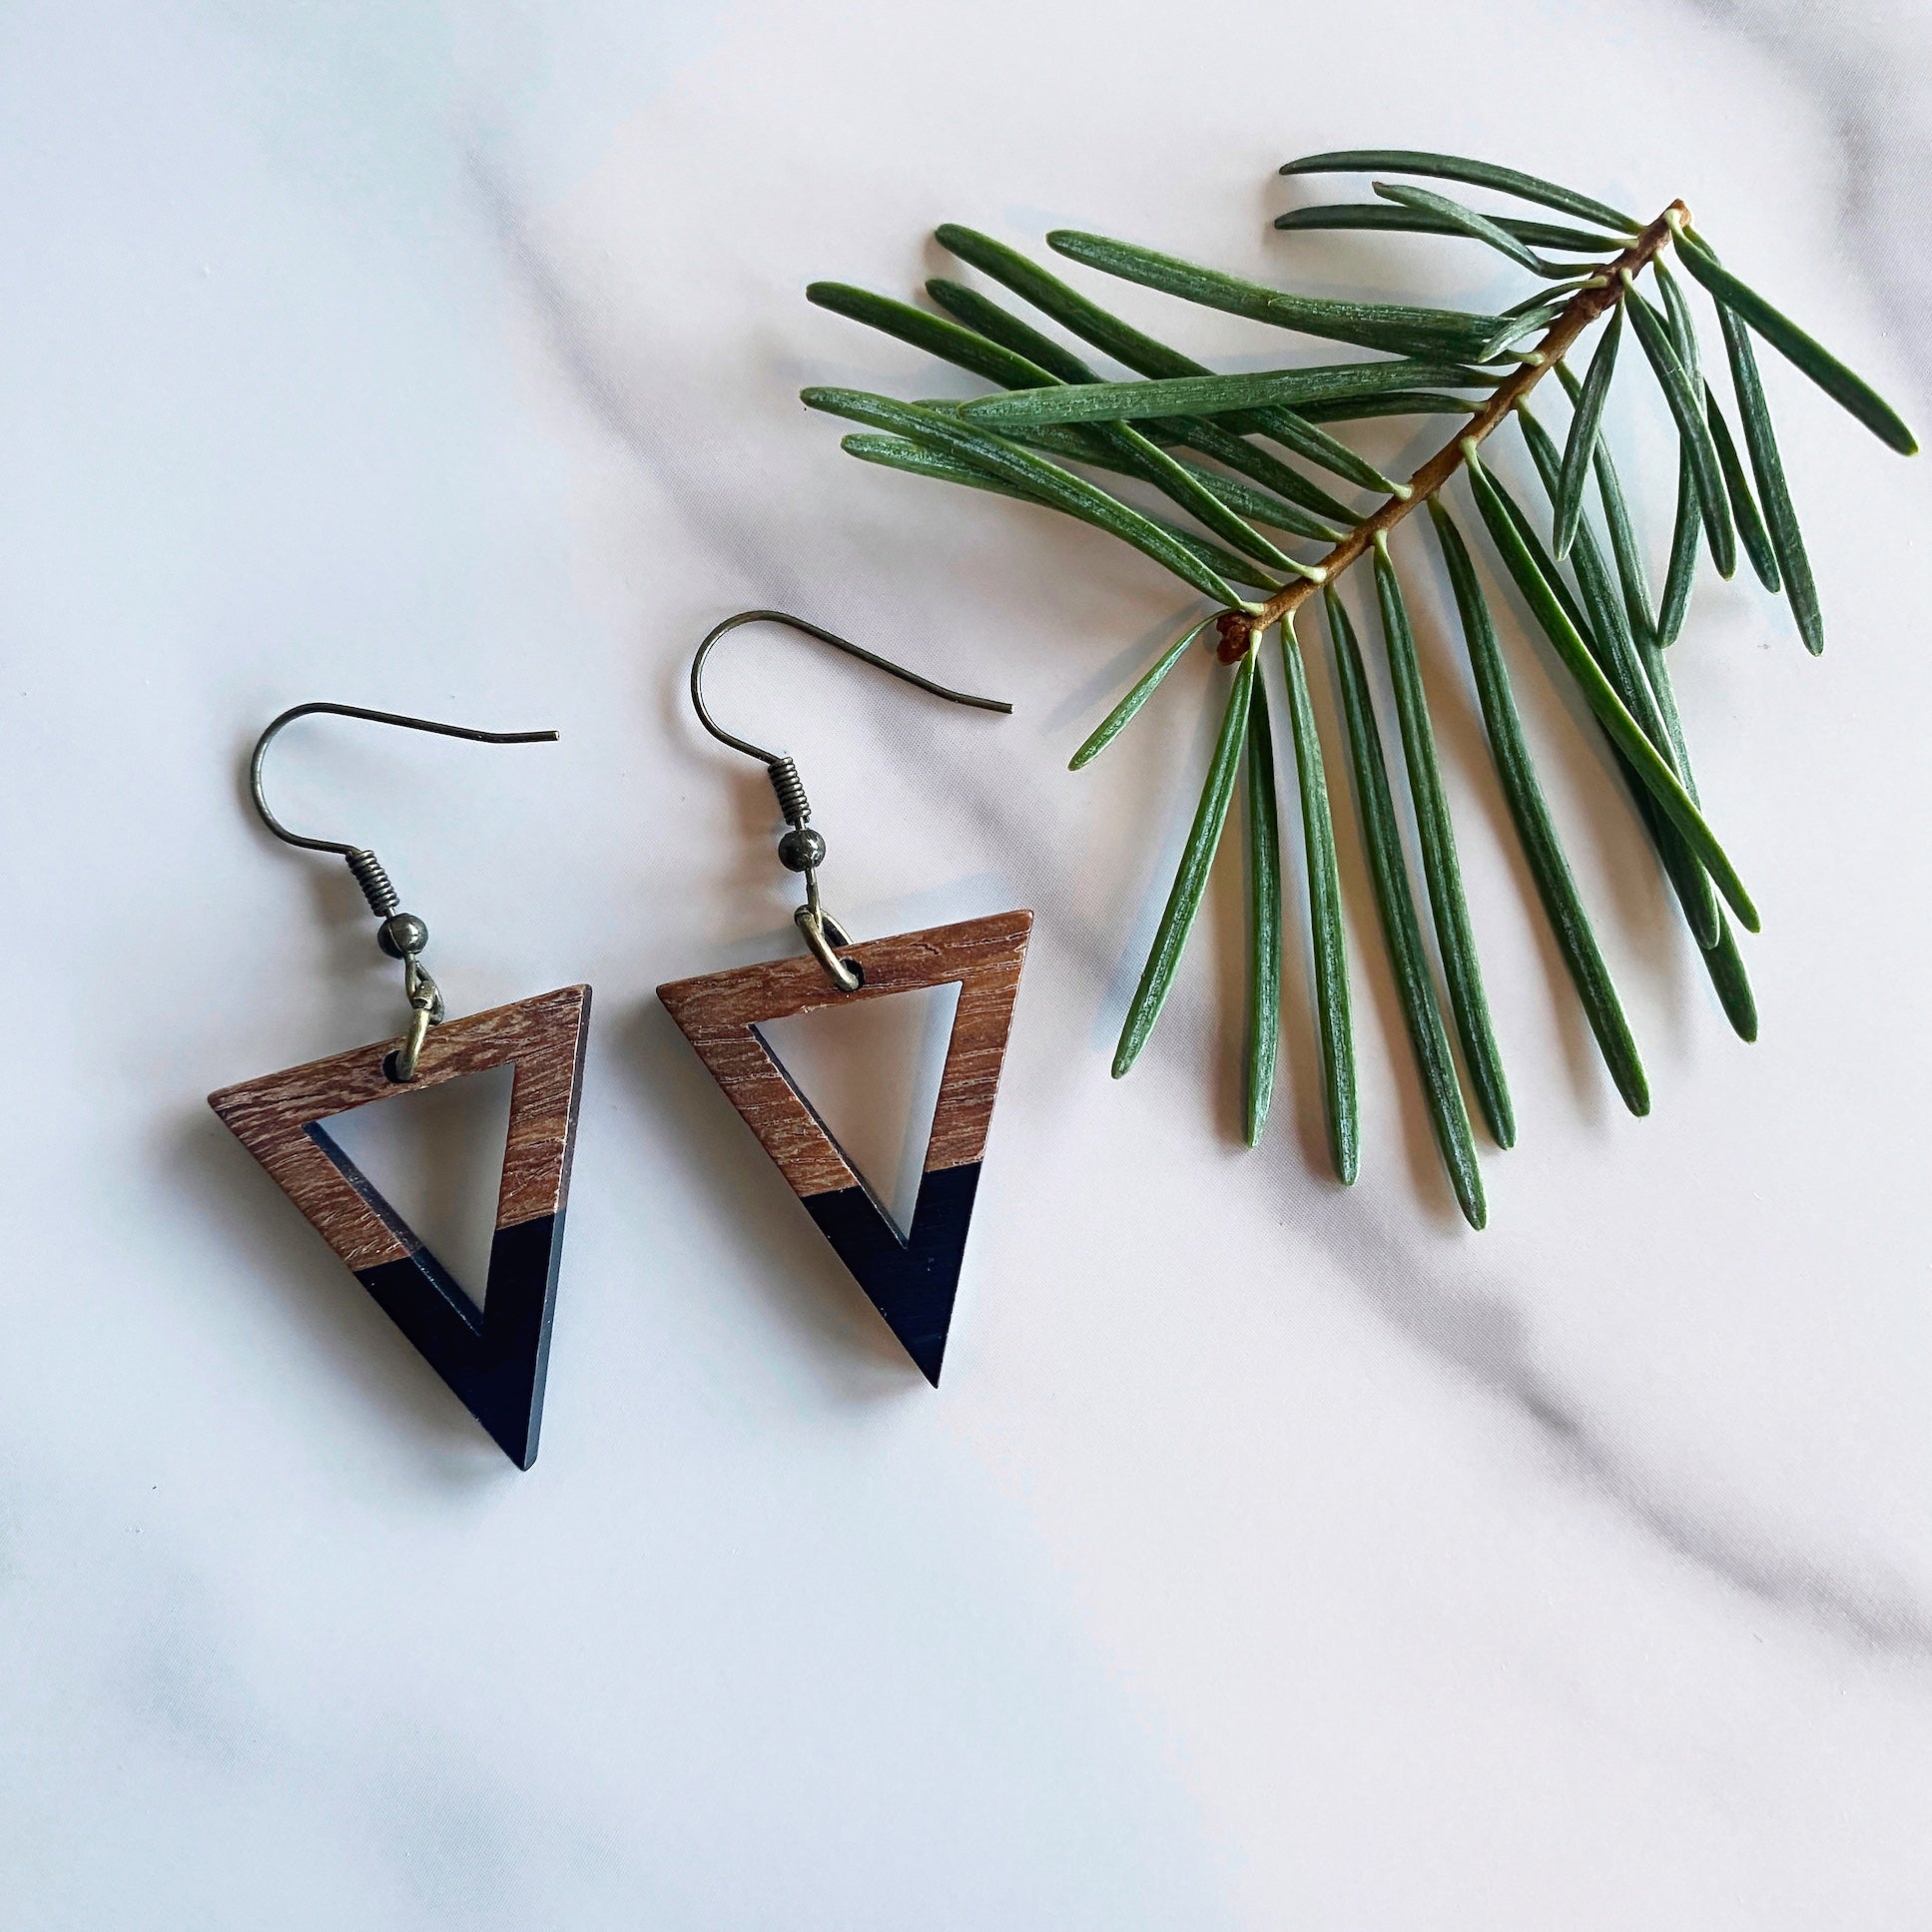 Triangle Walnut Wood + Resin Earrings | Black Dangle Earrings